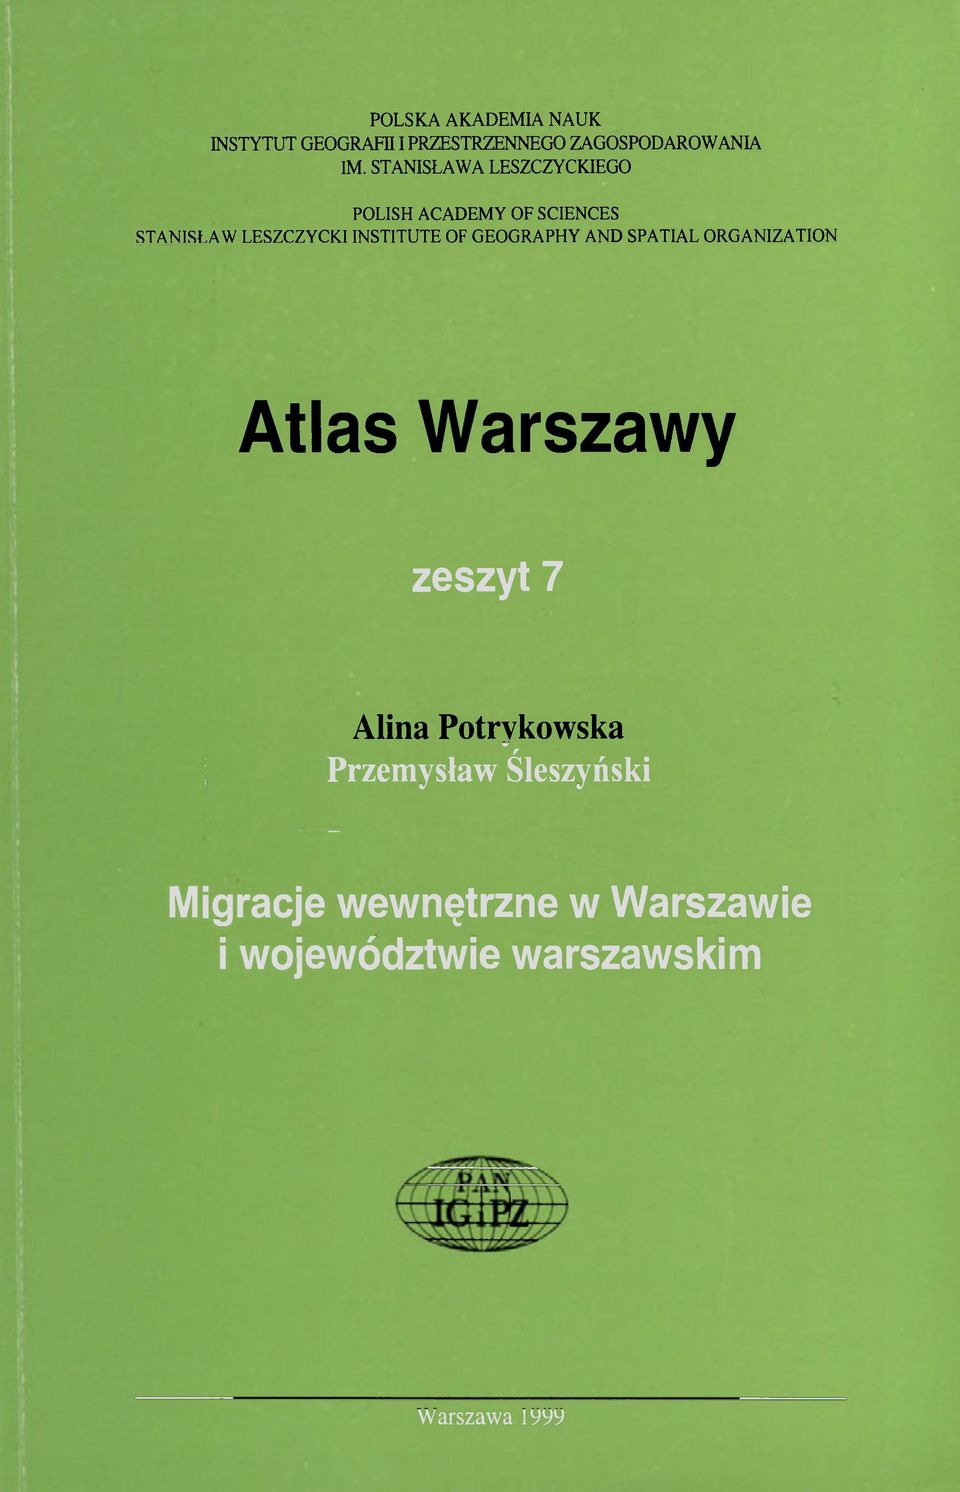 OF GEOGRAPHY AND SPATIAL ORGANIZATION Atlas Warszawy zeszyt 7 Alina Potrykowska r